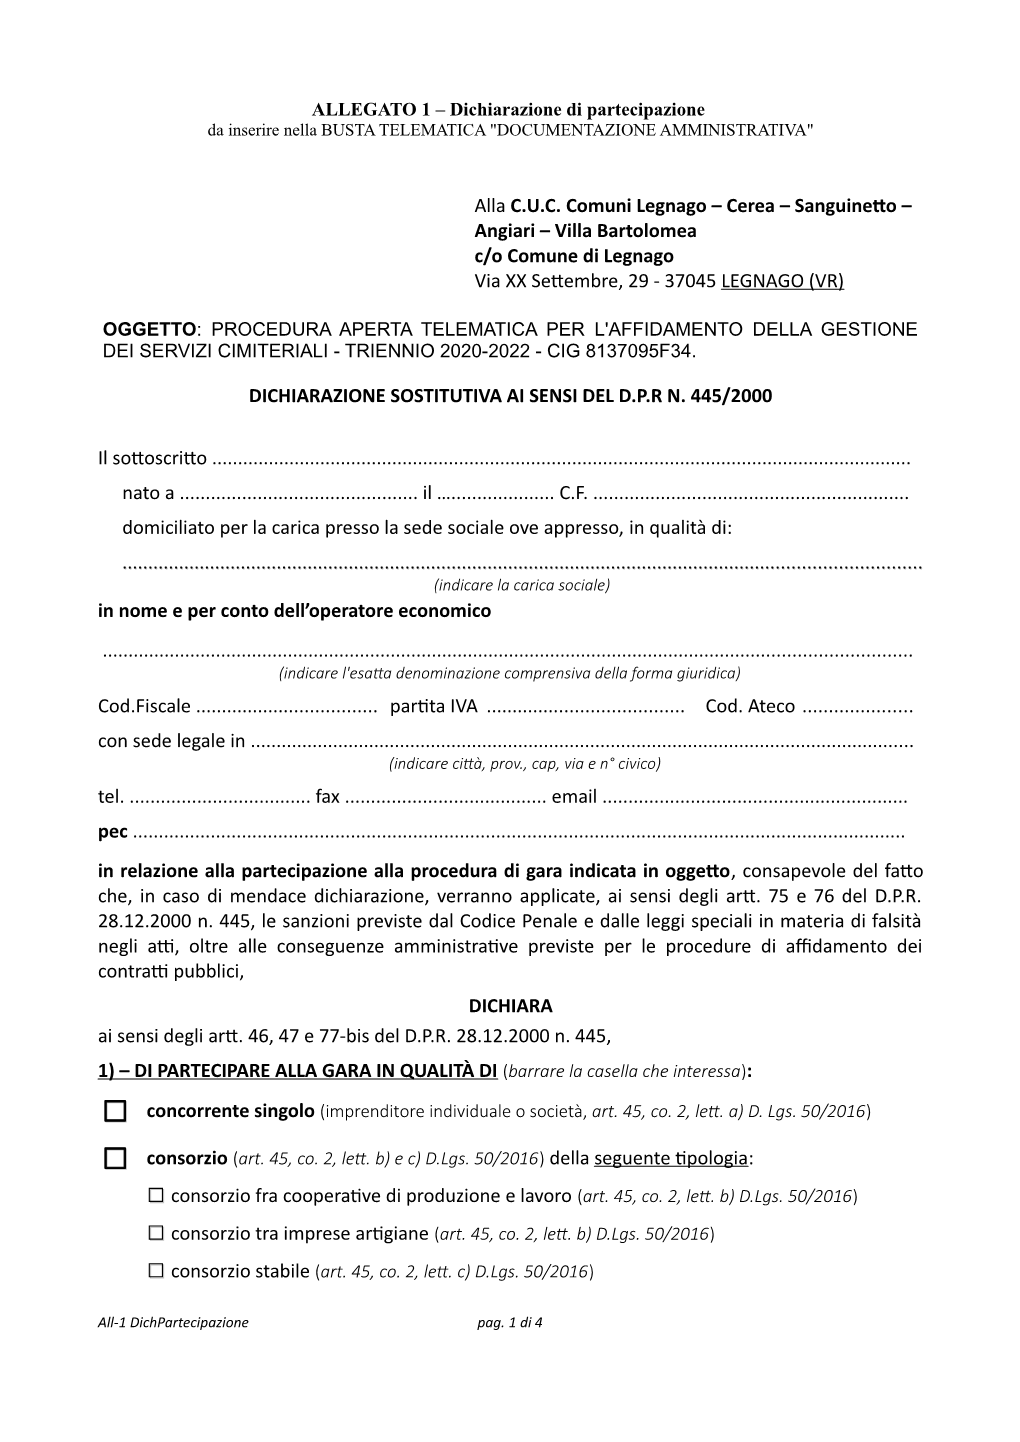 Alla C.U.C. Comuni Legnago – Cerea – Sanguinetto – Angiari – Villa Bartolomea C/O Comune Di Legnago Via XX Settembre, 29 - 37045 LEGNAGO (VR)